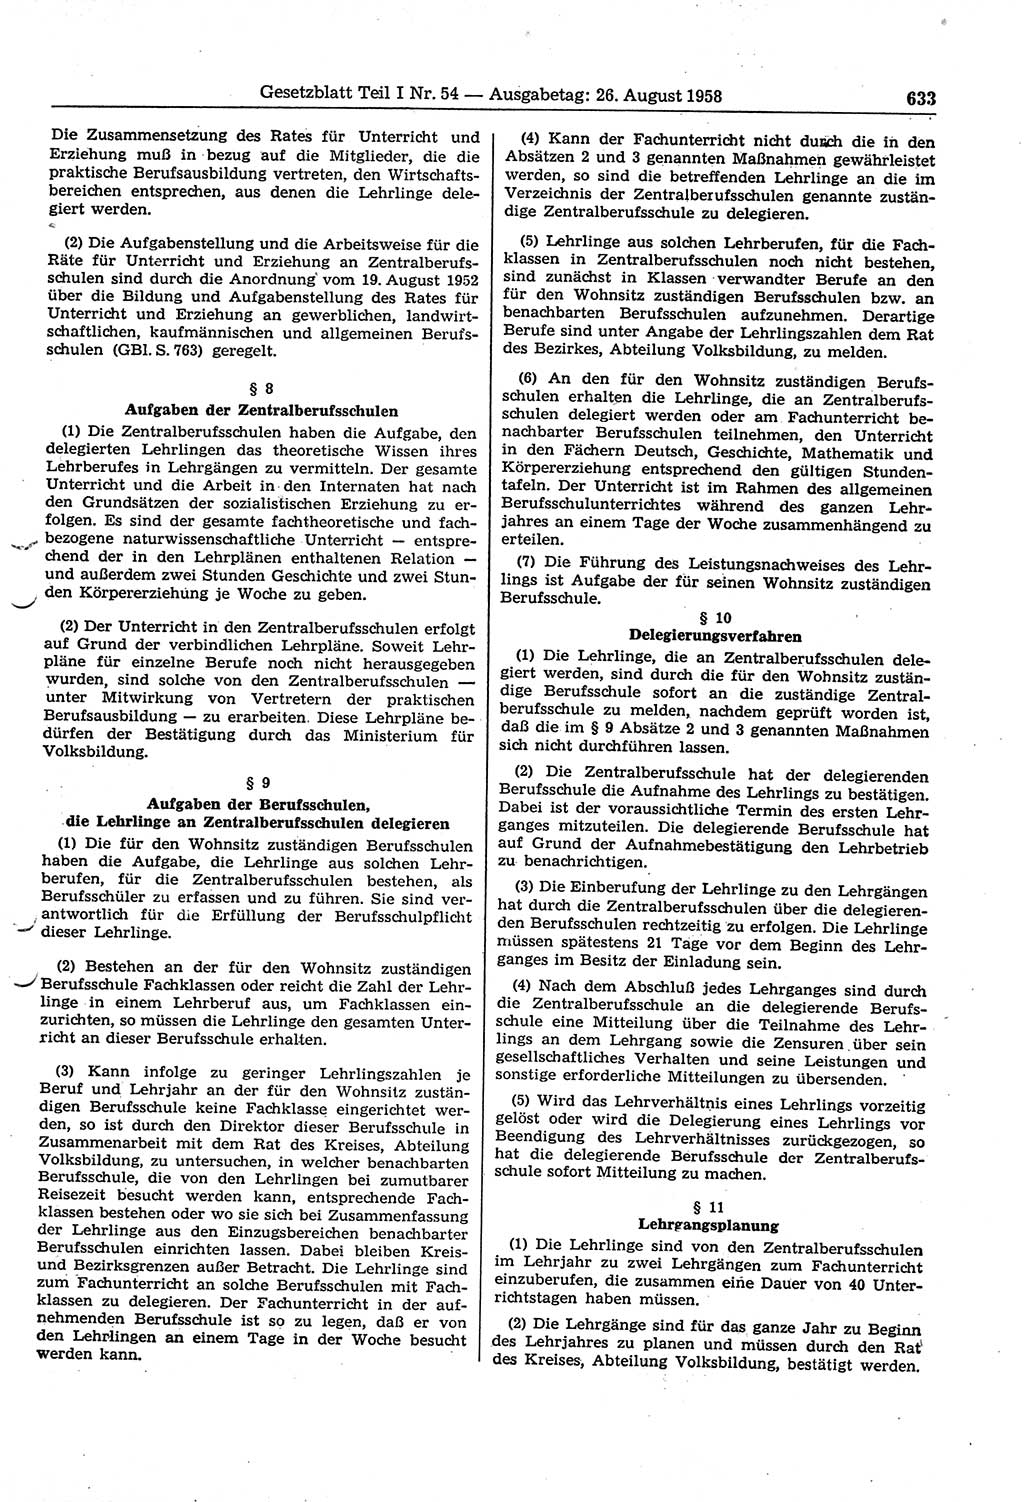 Gesetzblatt (GBl.) der Deutschen Demokratischen Republik (DDR) Teil Ⅰ 1958, Seite 633 (GBl. DDR Ⅰ 1958, S. 633)